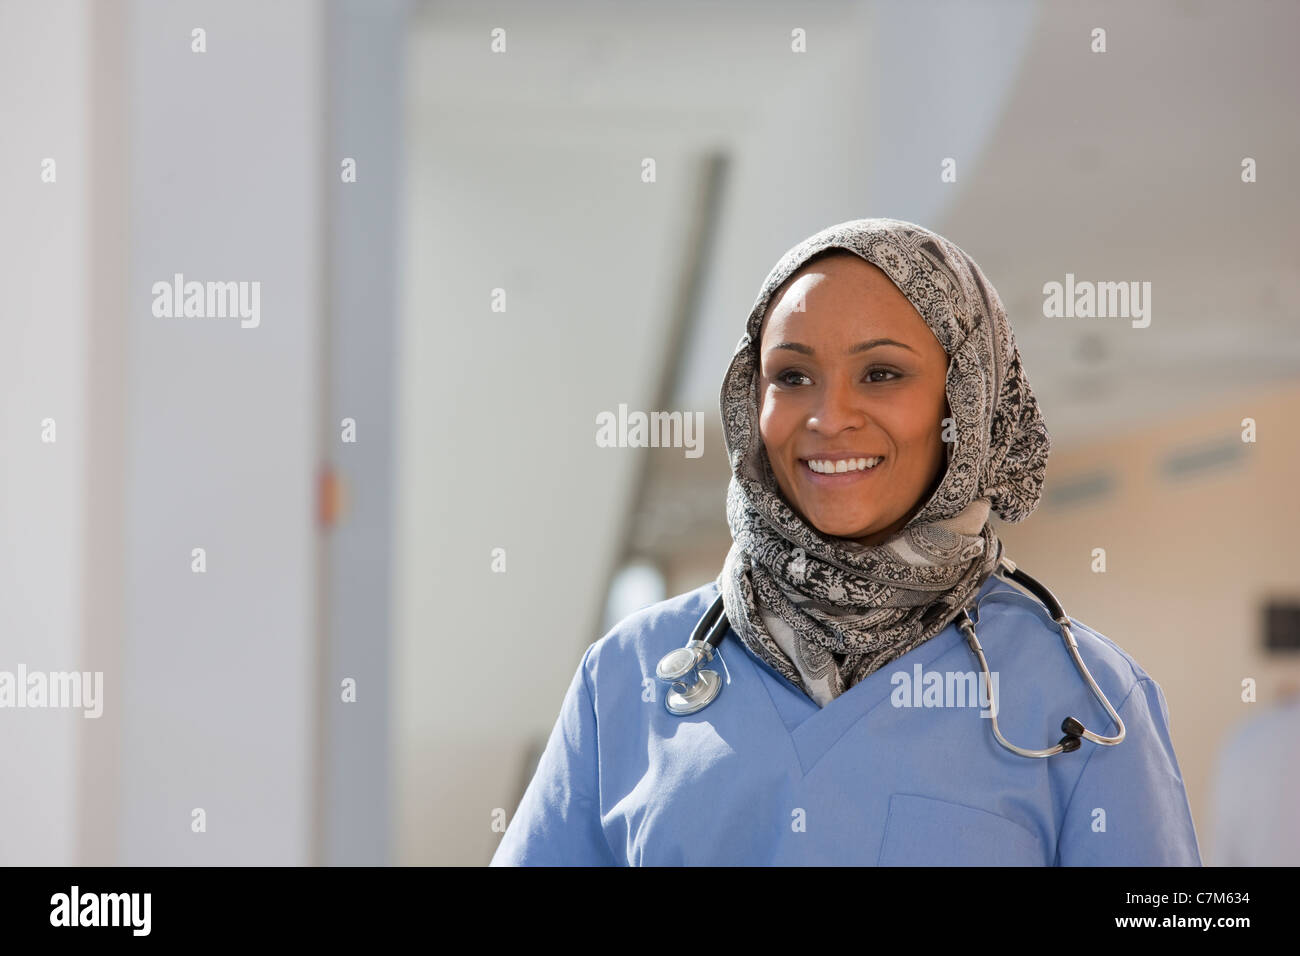 Ritratto di una donna sorridente infermiere Foto Stock